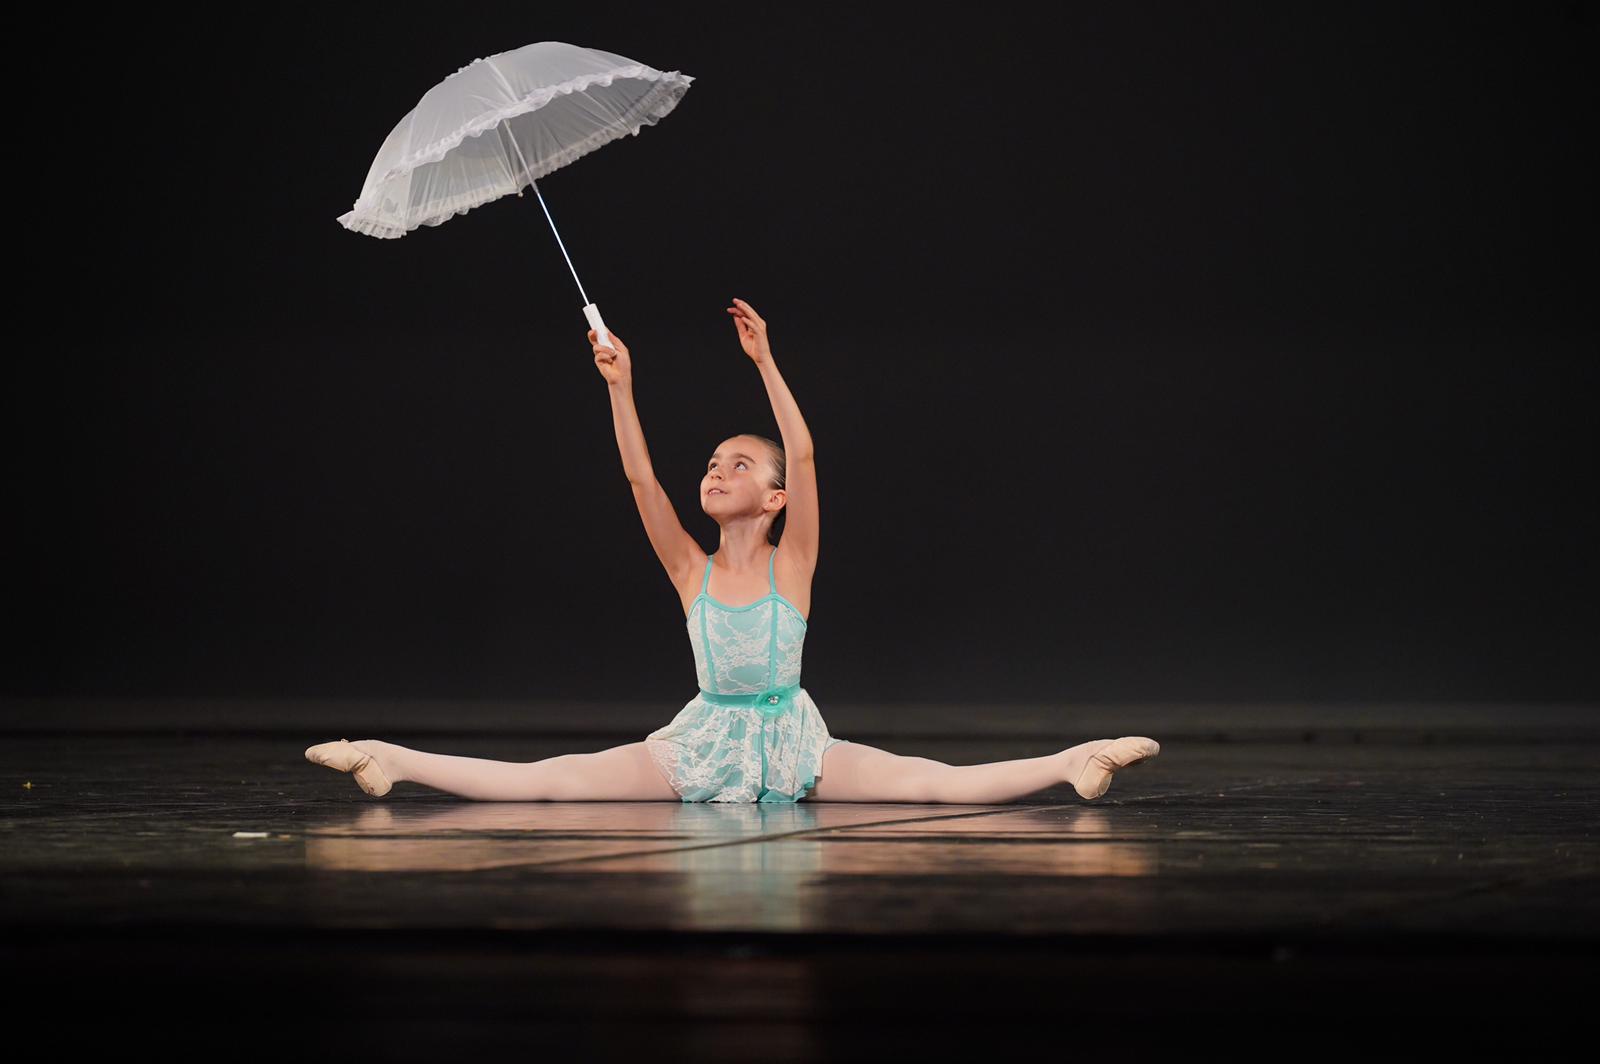 Ginevra Fiore supera la prima selezione per la Scuola di Ballo Accademia Teatro alla Scala